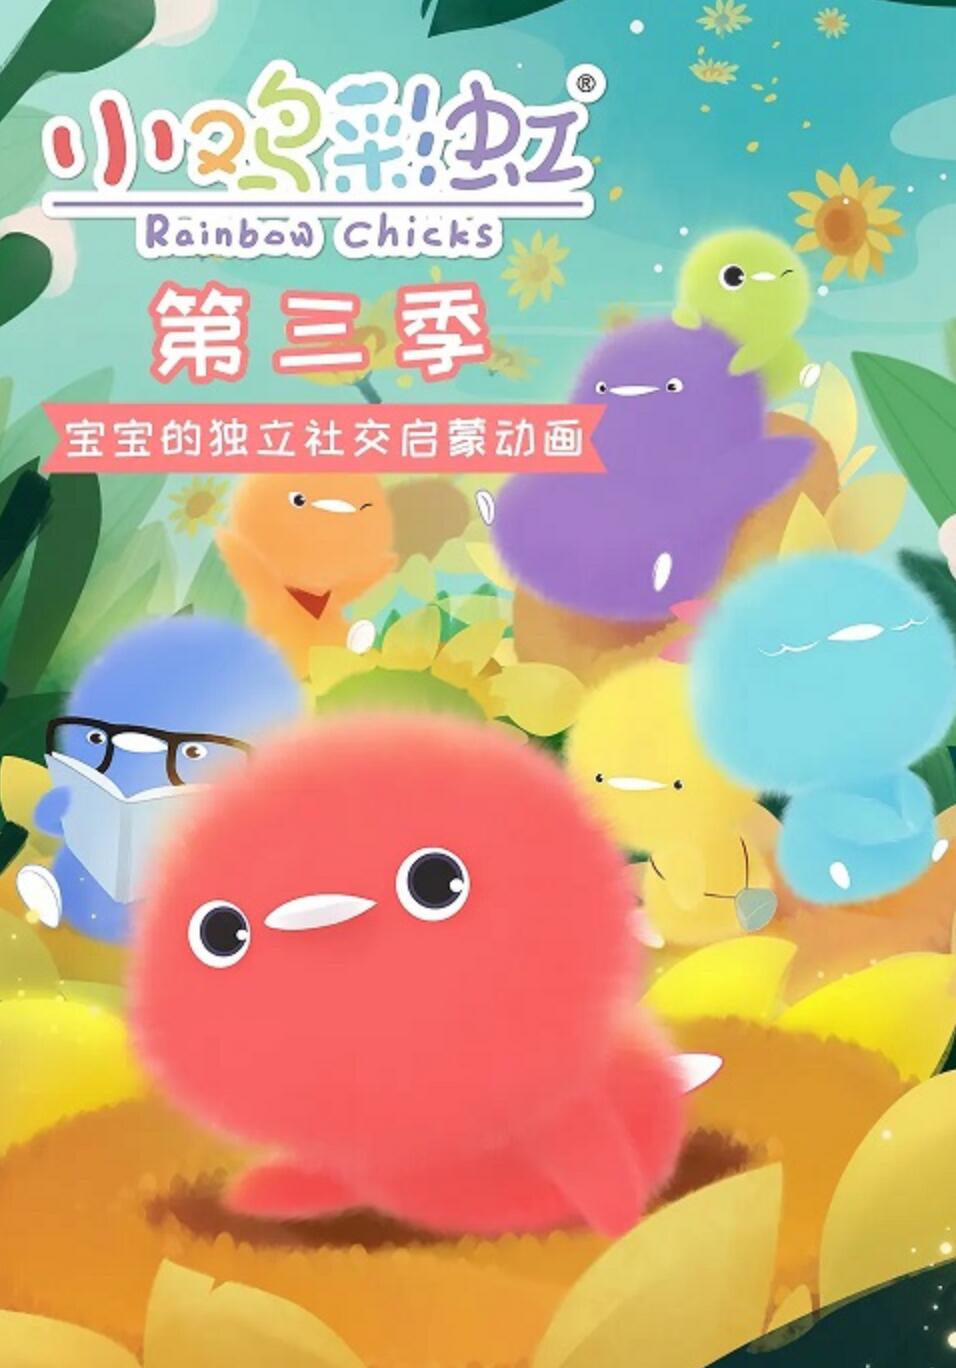 《小鸡彩虹》第3季全26集下载 mp4高清720P 幼儿萌系搞笑益智动画片4K|1080P高清